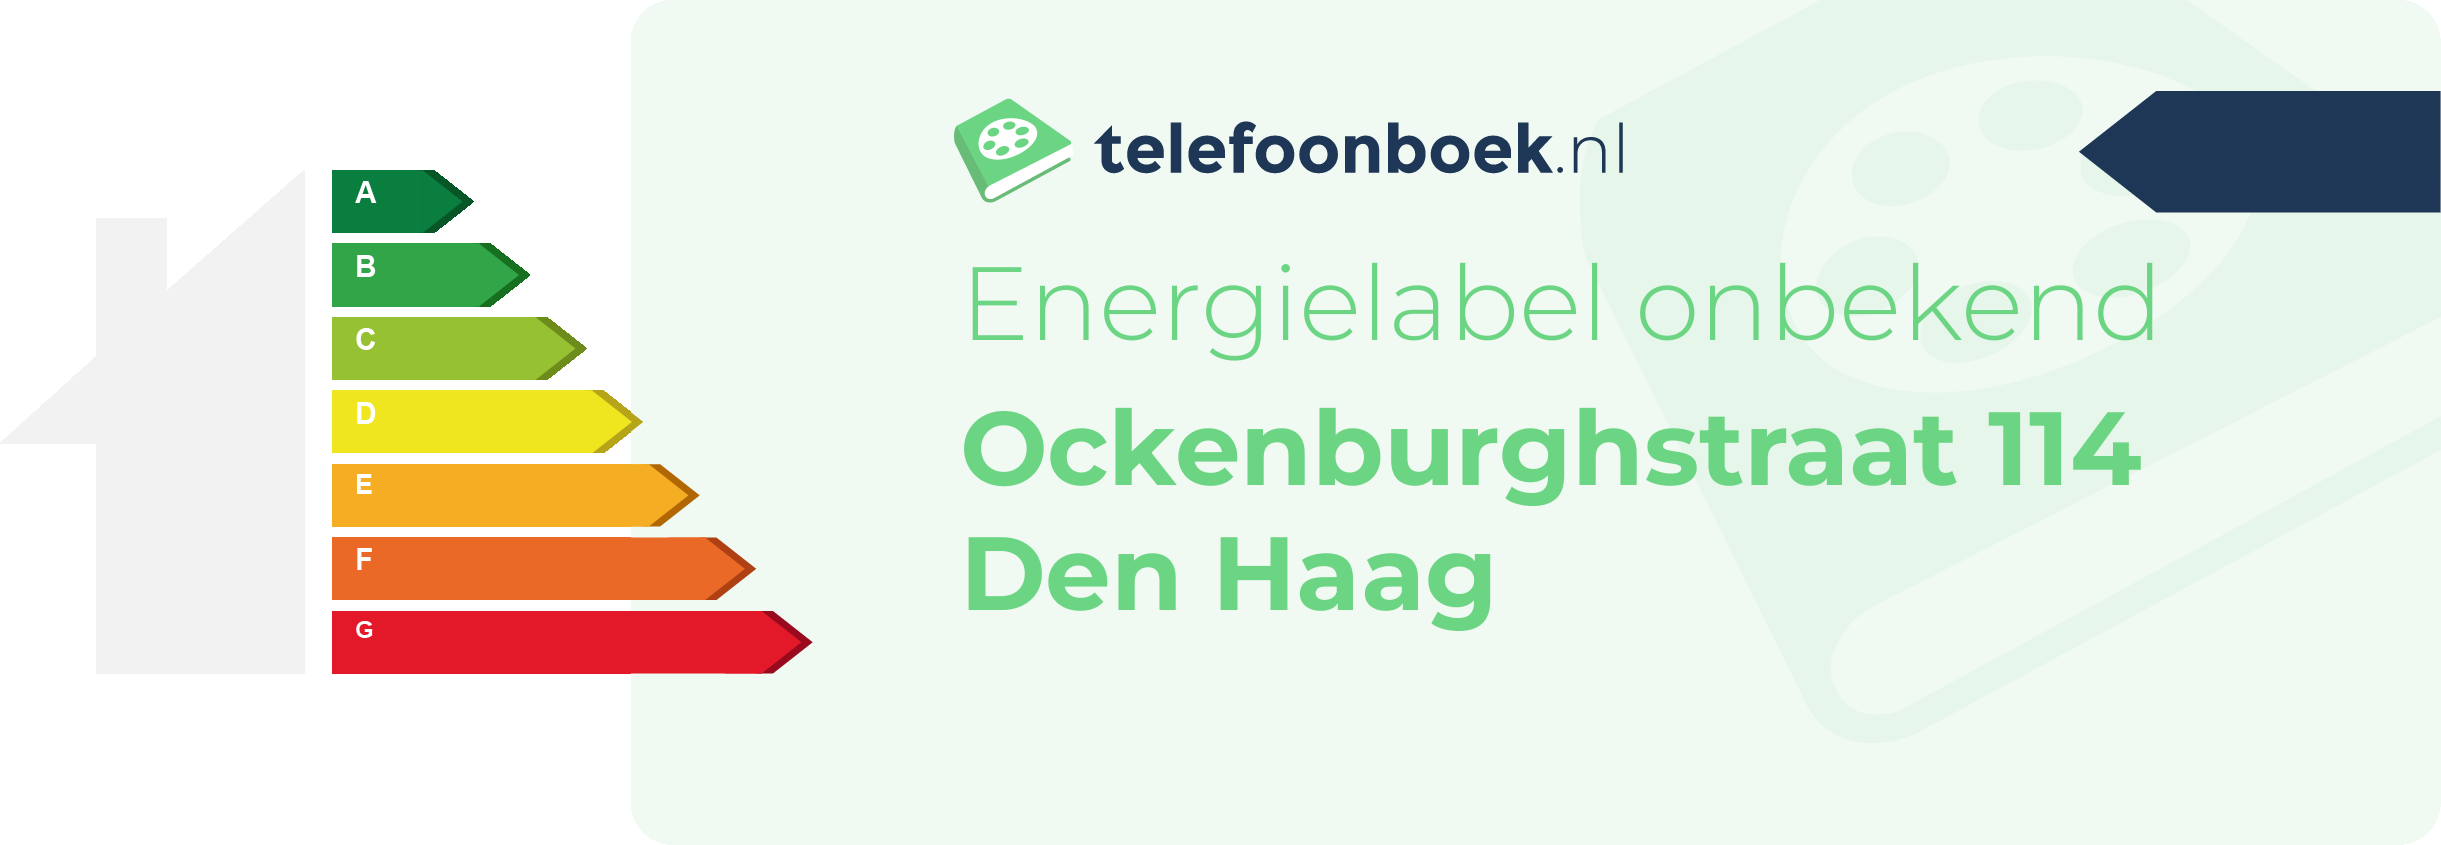 Energielabel Ockenburghstraat 114 Den Haag